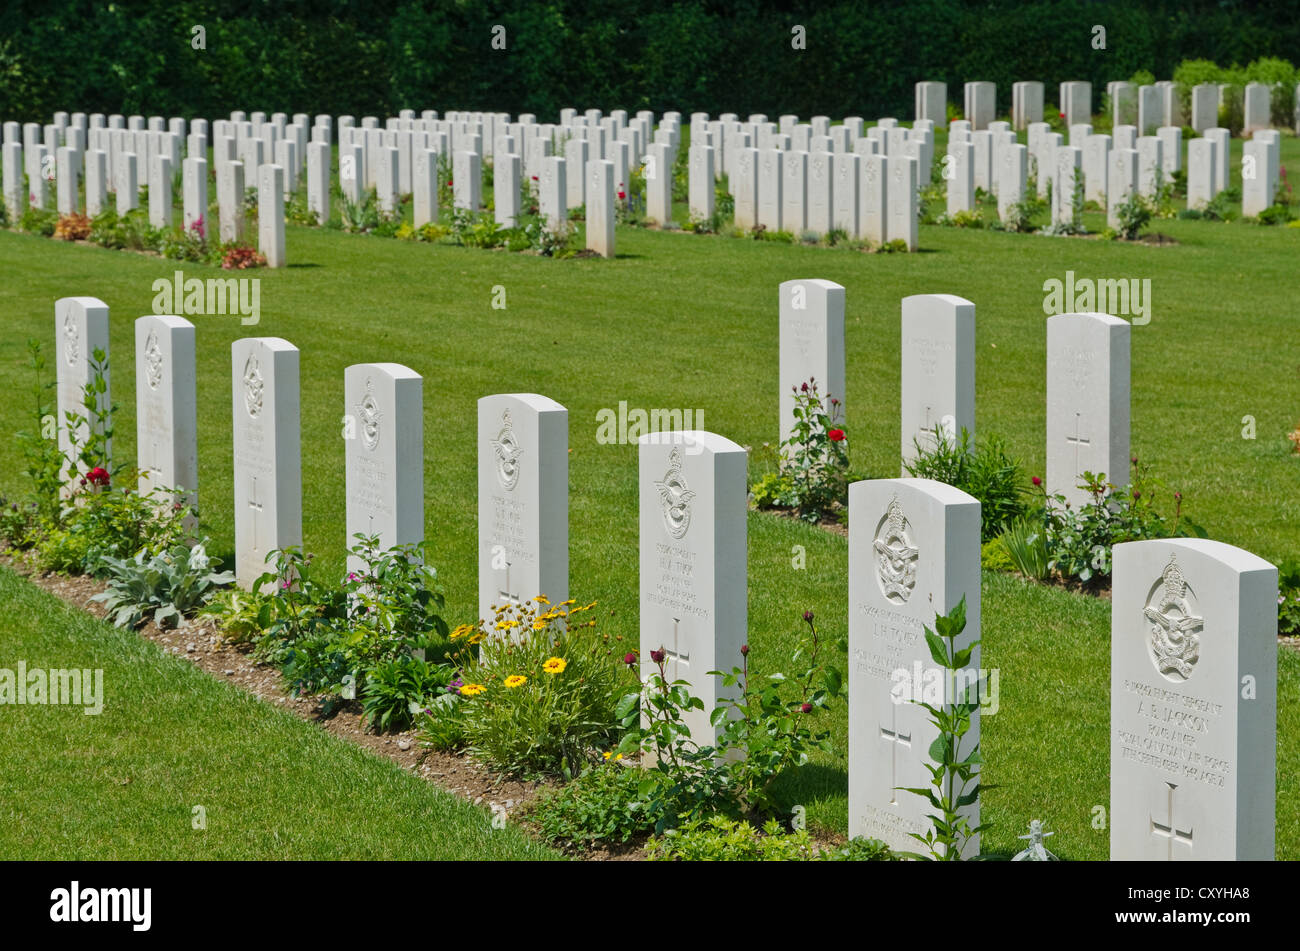 Durnbach Cimitero di Guerra, il luogo del riposo finale per 2960 soldati morti in WW2, Duernbach, Gmund am Tegernsee, Bavaria Foto Stock